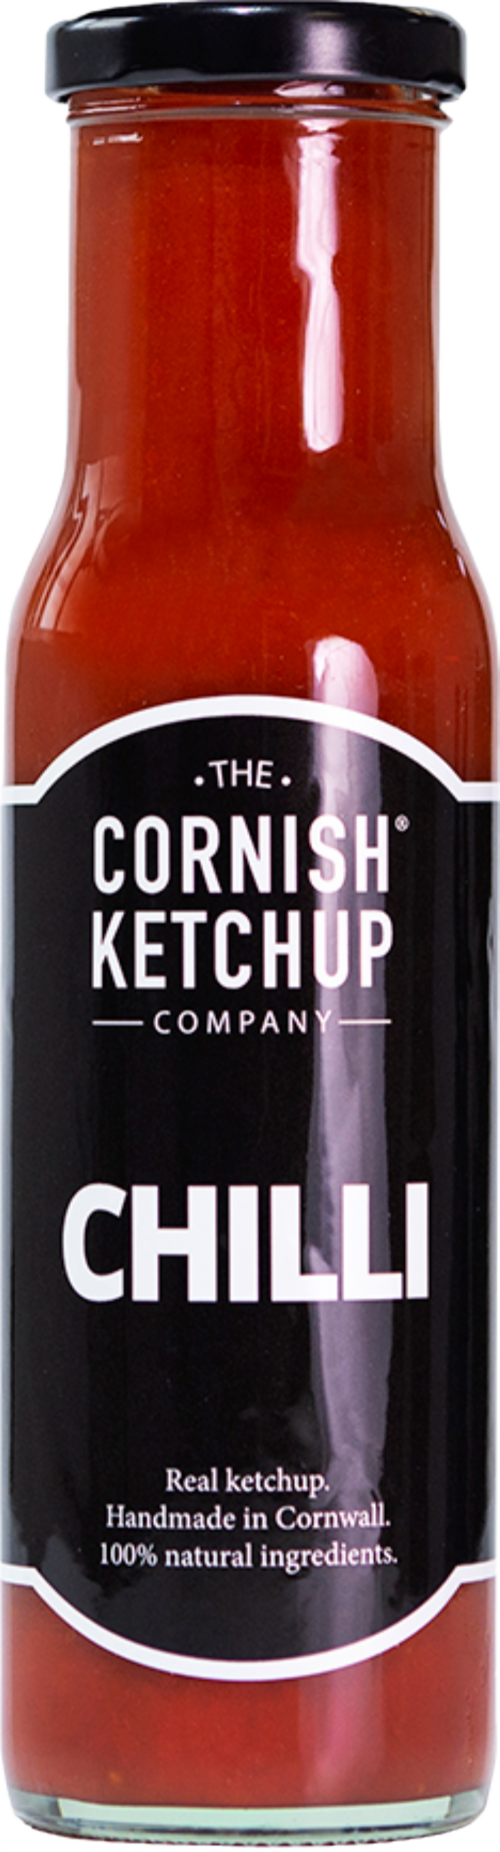 THE CORNISH KETCHUP CO. Chilli Ketchup 255g